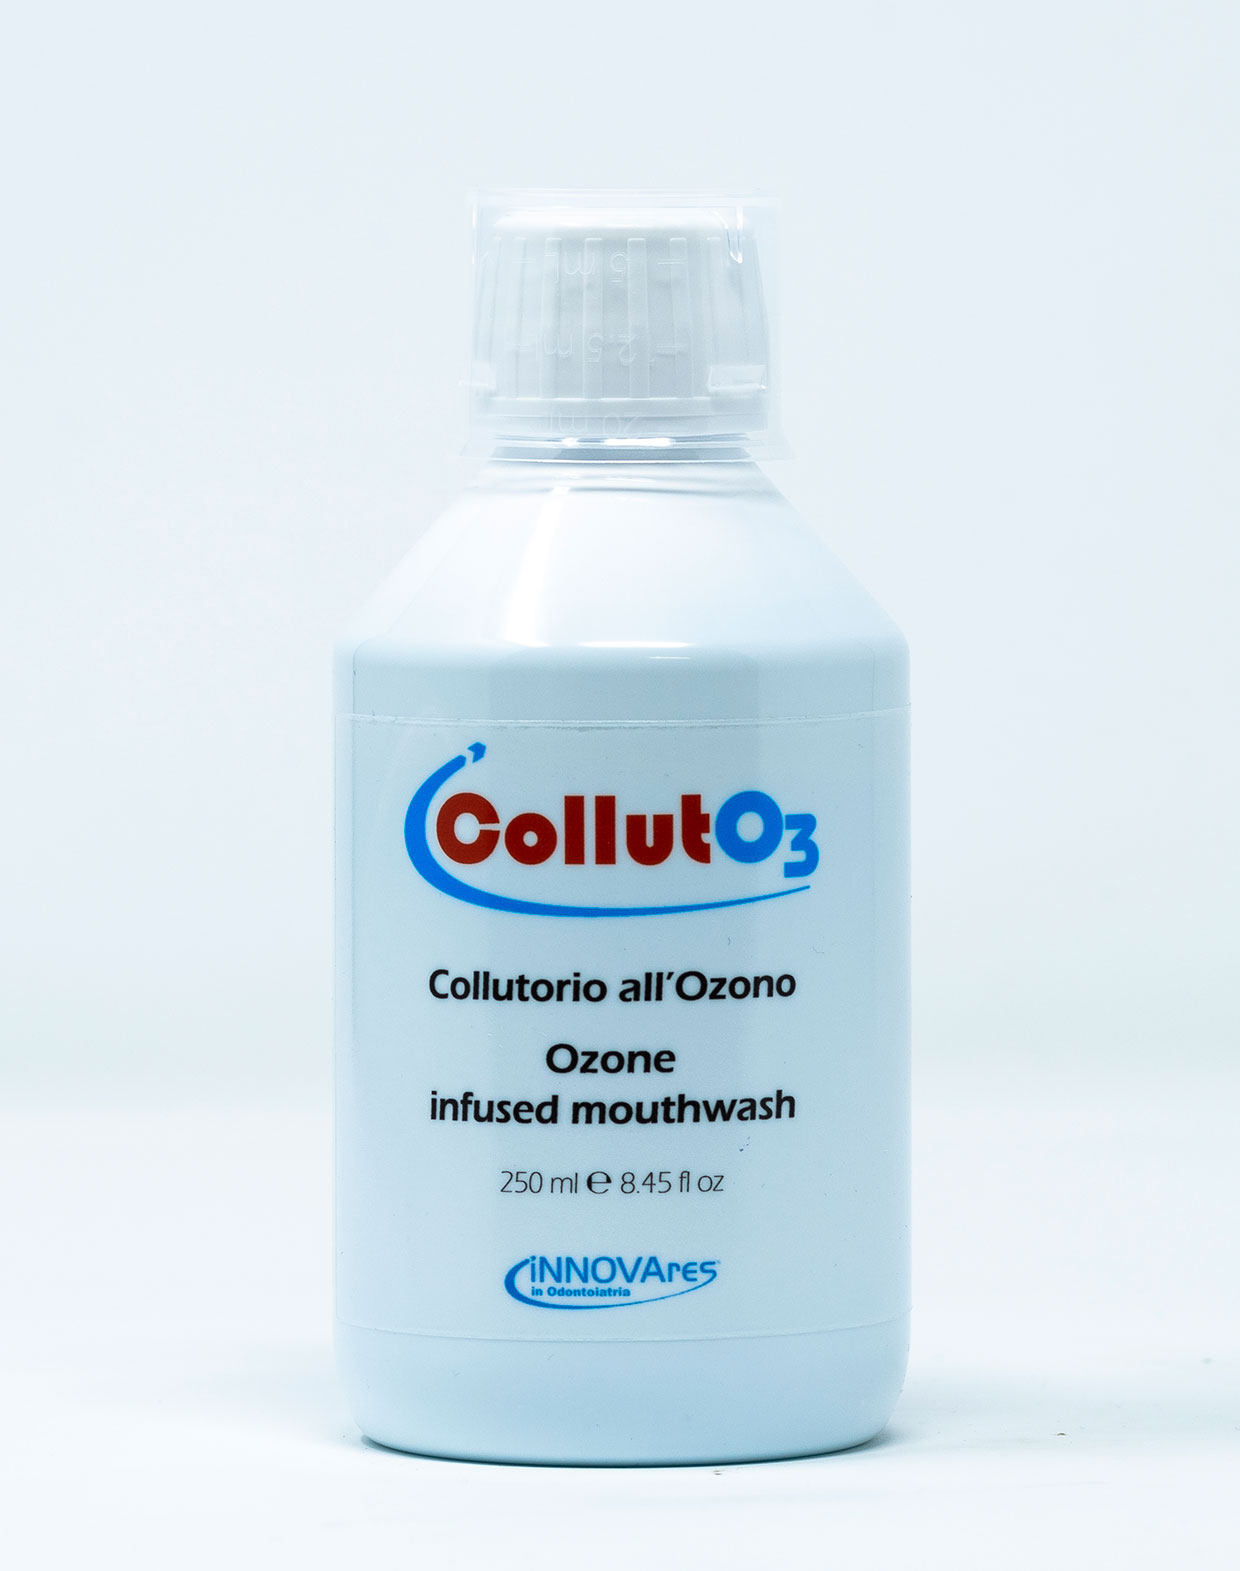 [BD] CollutO3 Collutorio all’Ozono – 250 ml